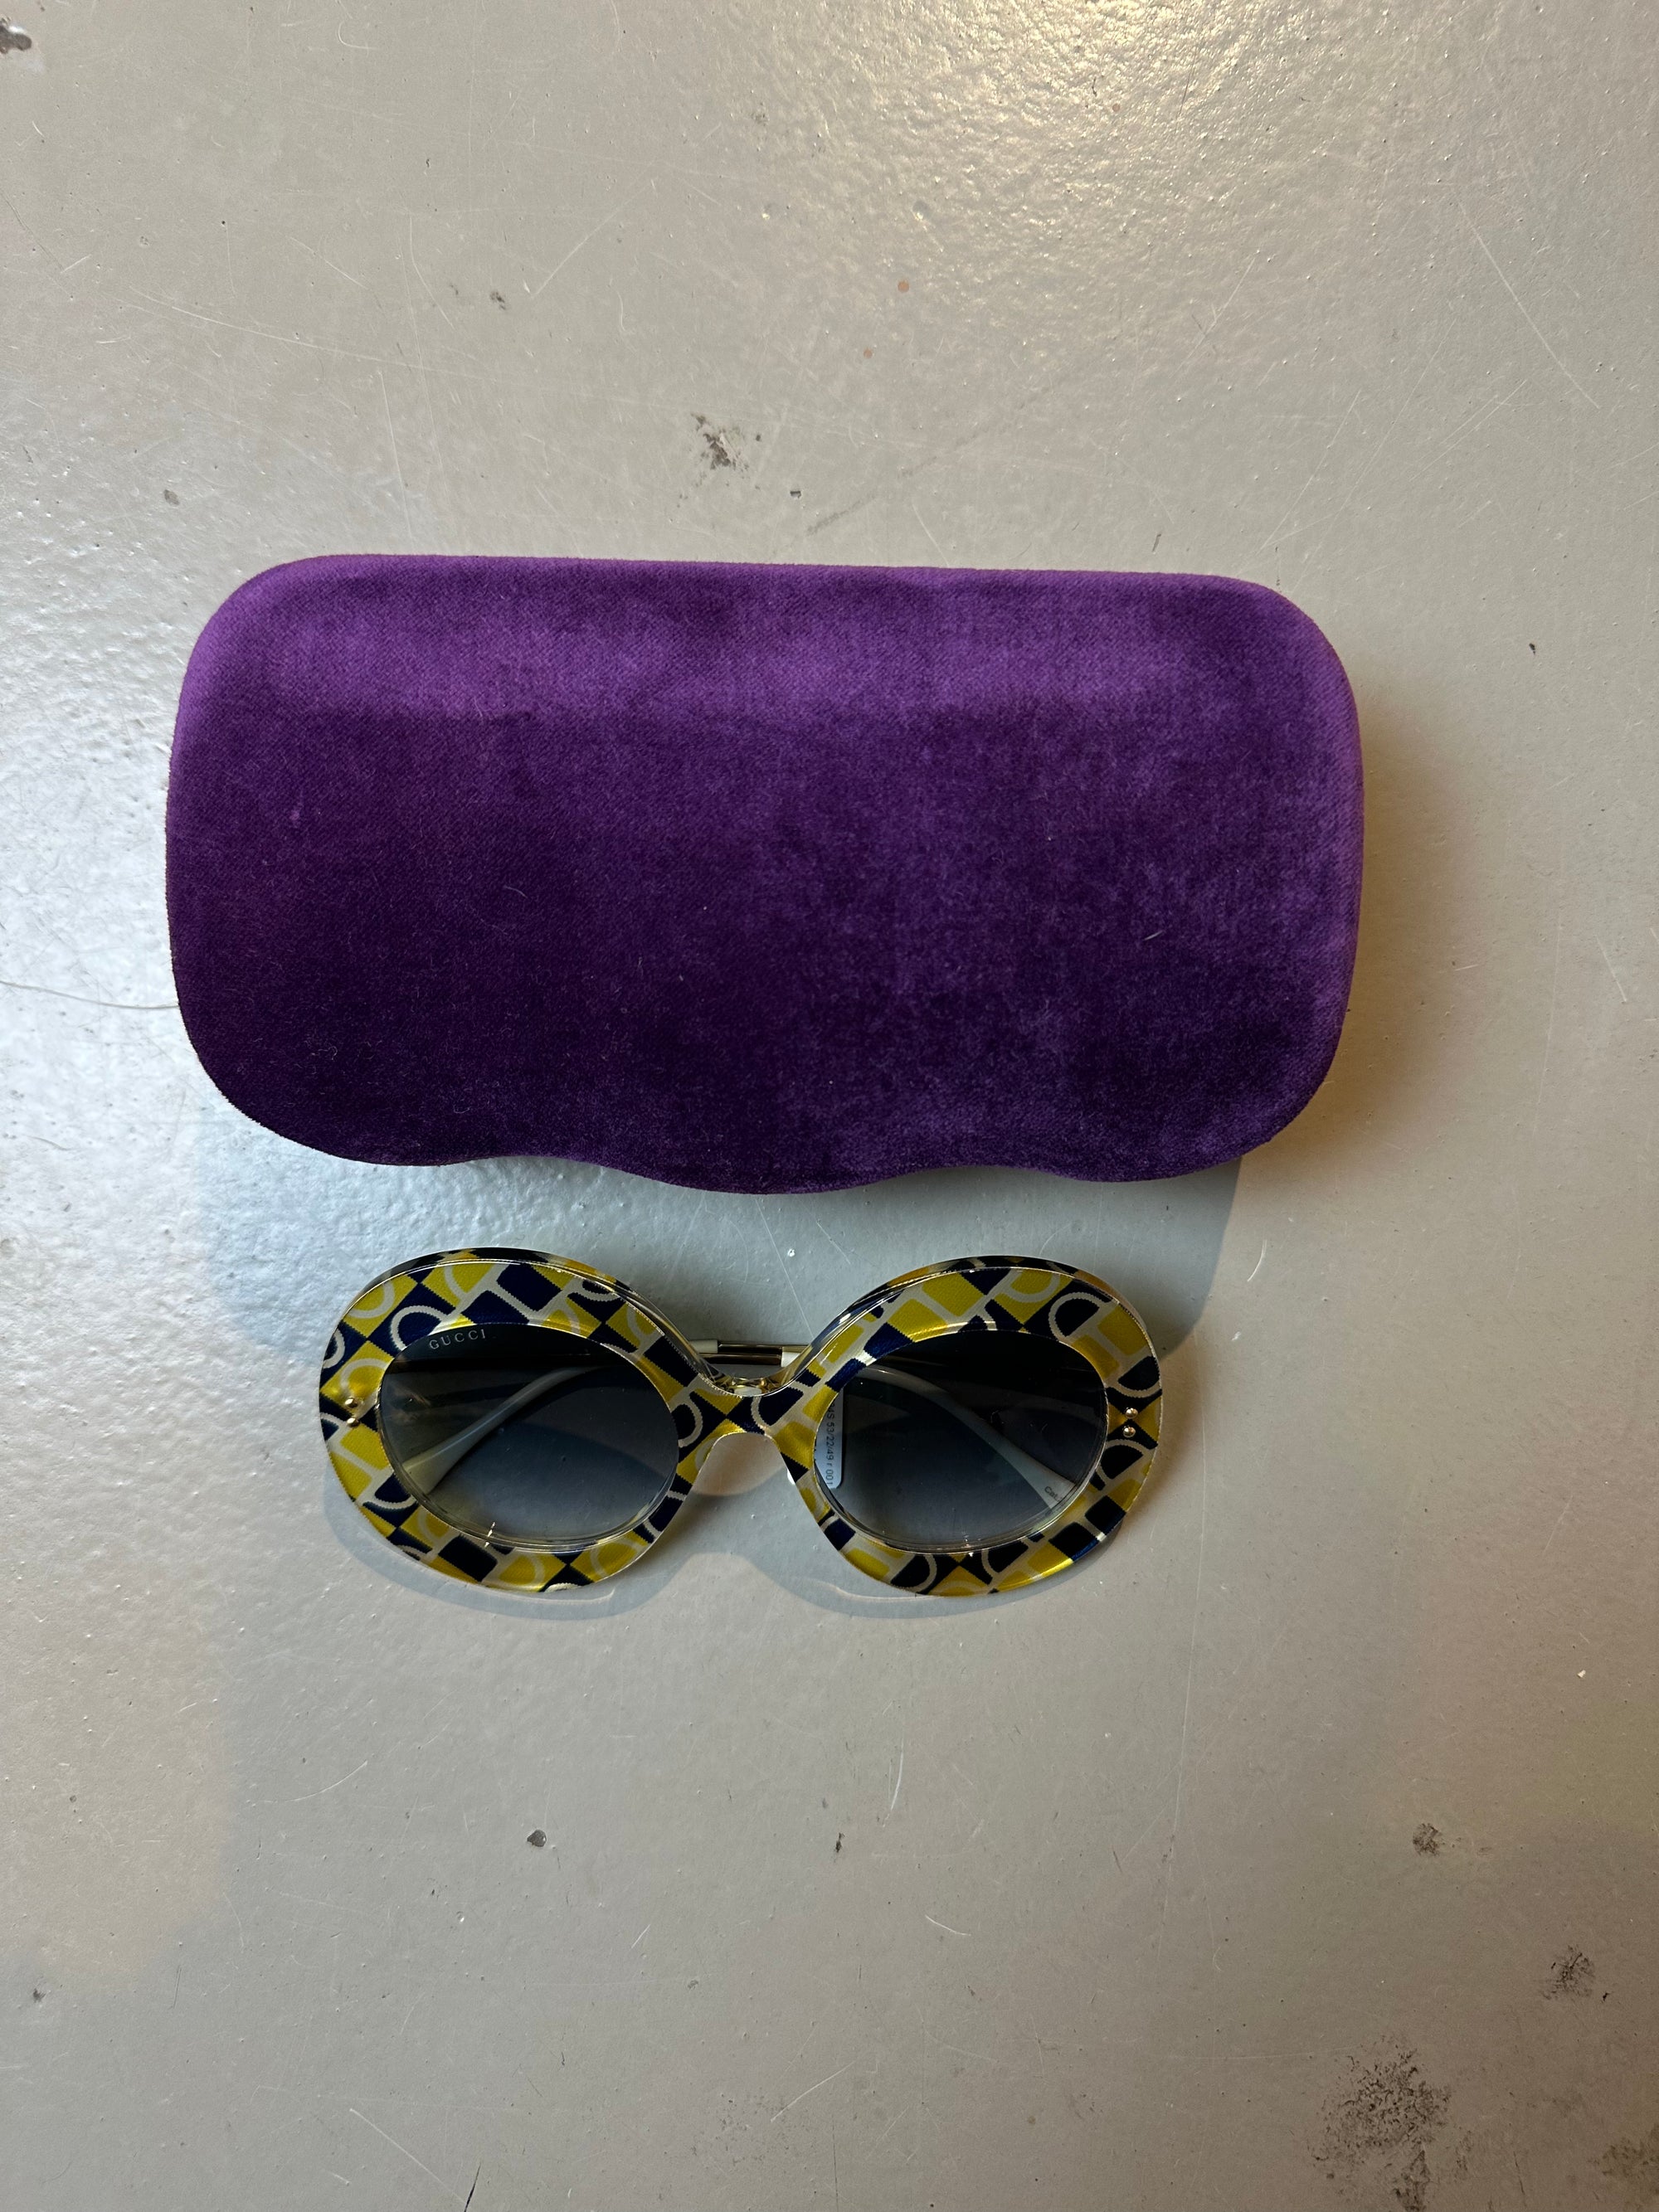 Produktbild der Gucci Sunglasses von vorne mit Case.